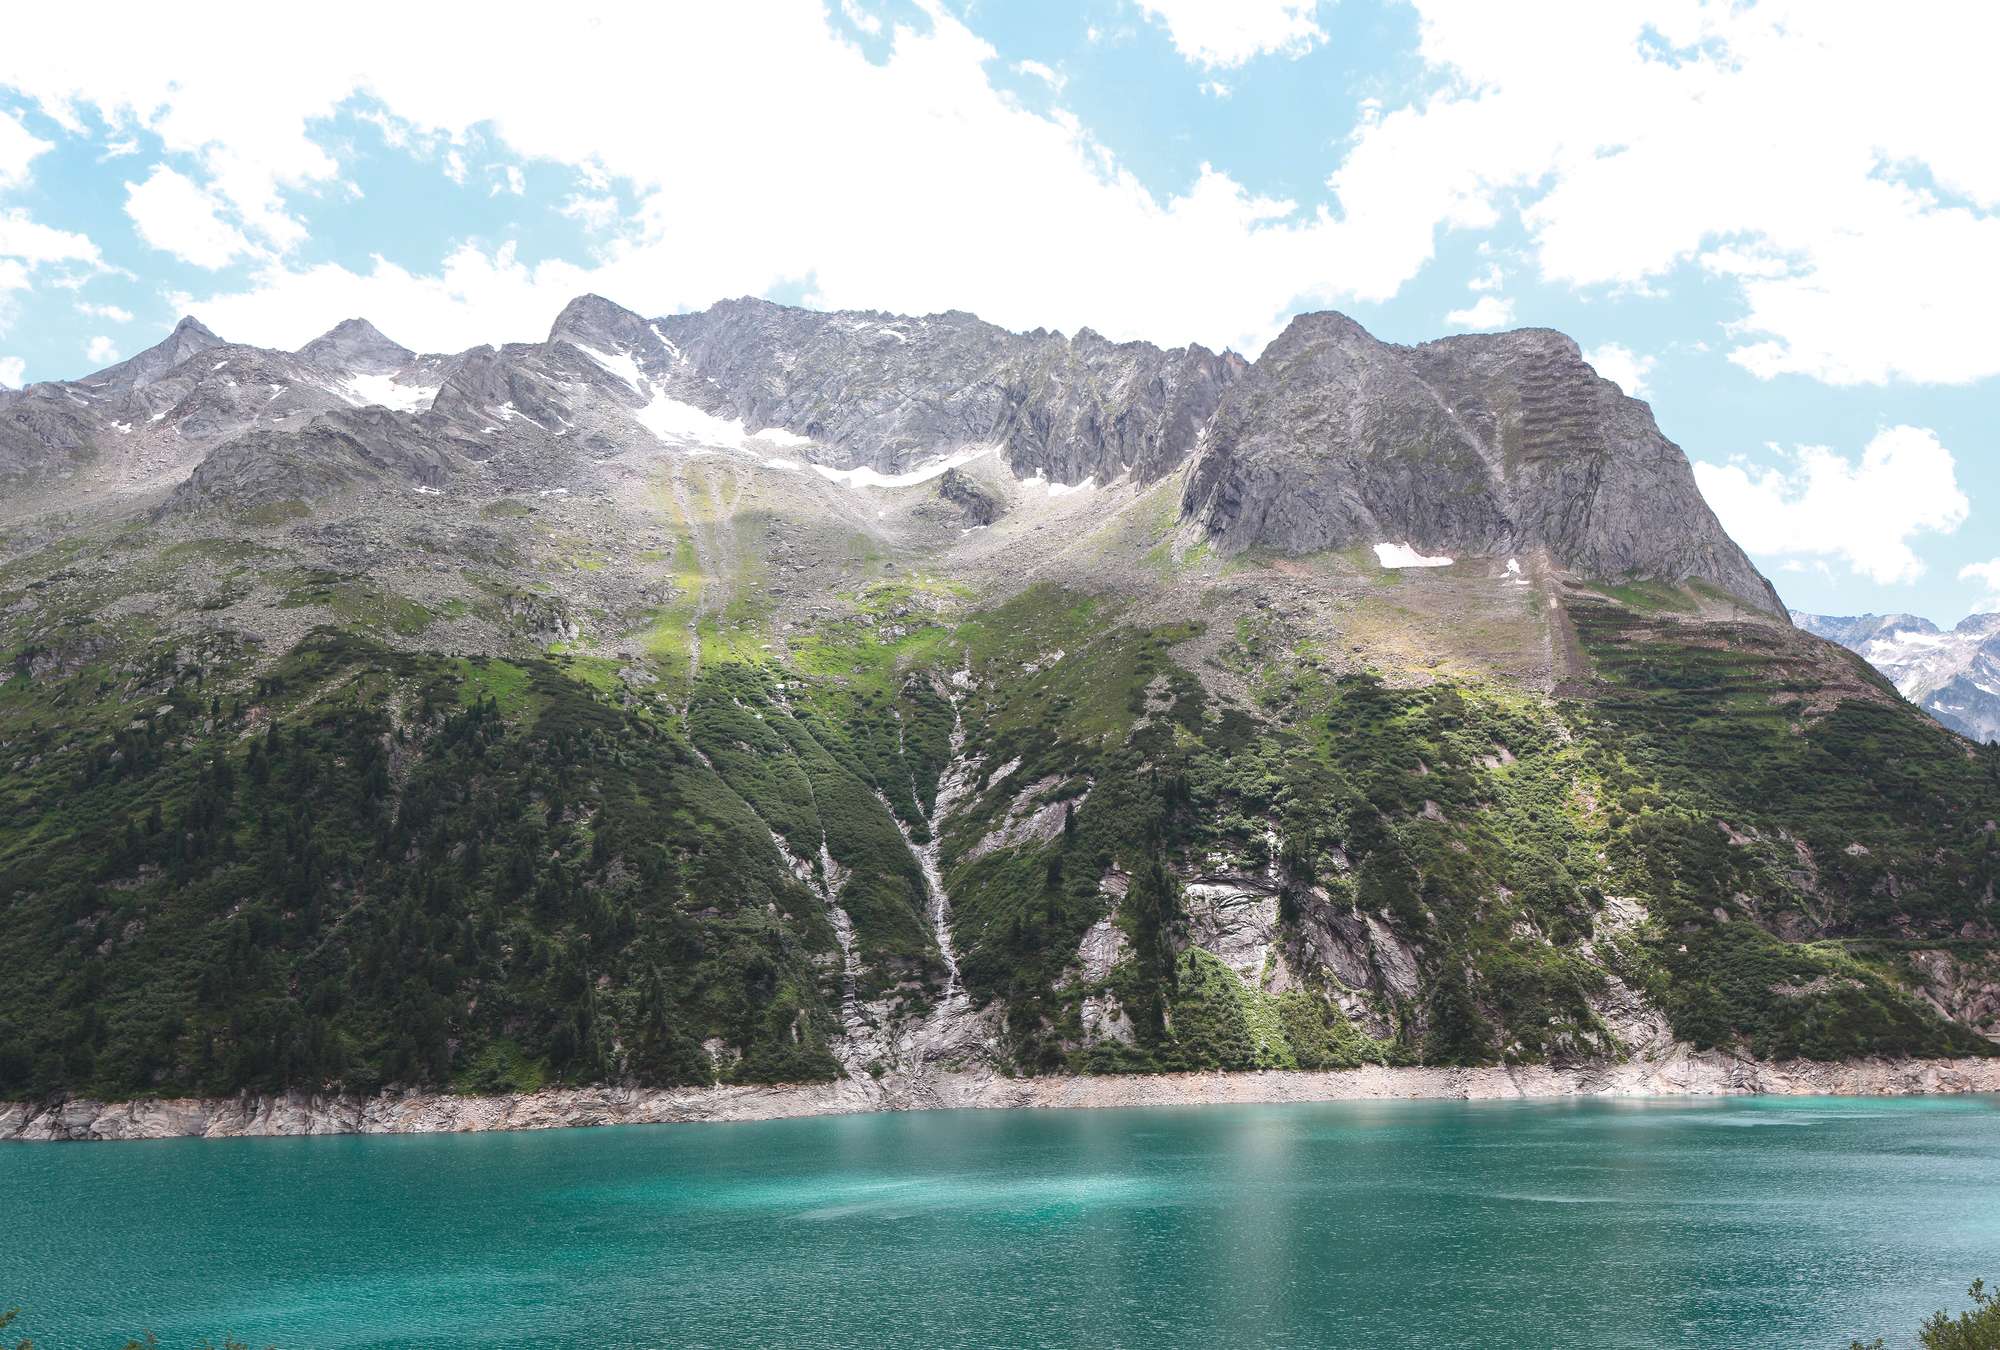             Fotomurali Paesaggio montano con lago alpino
        